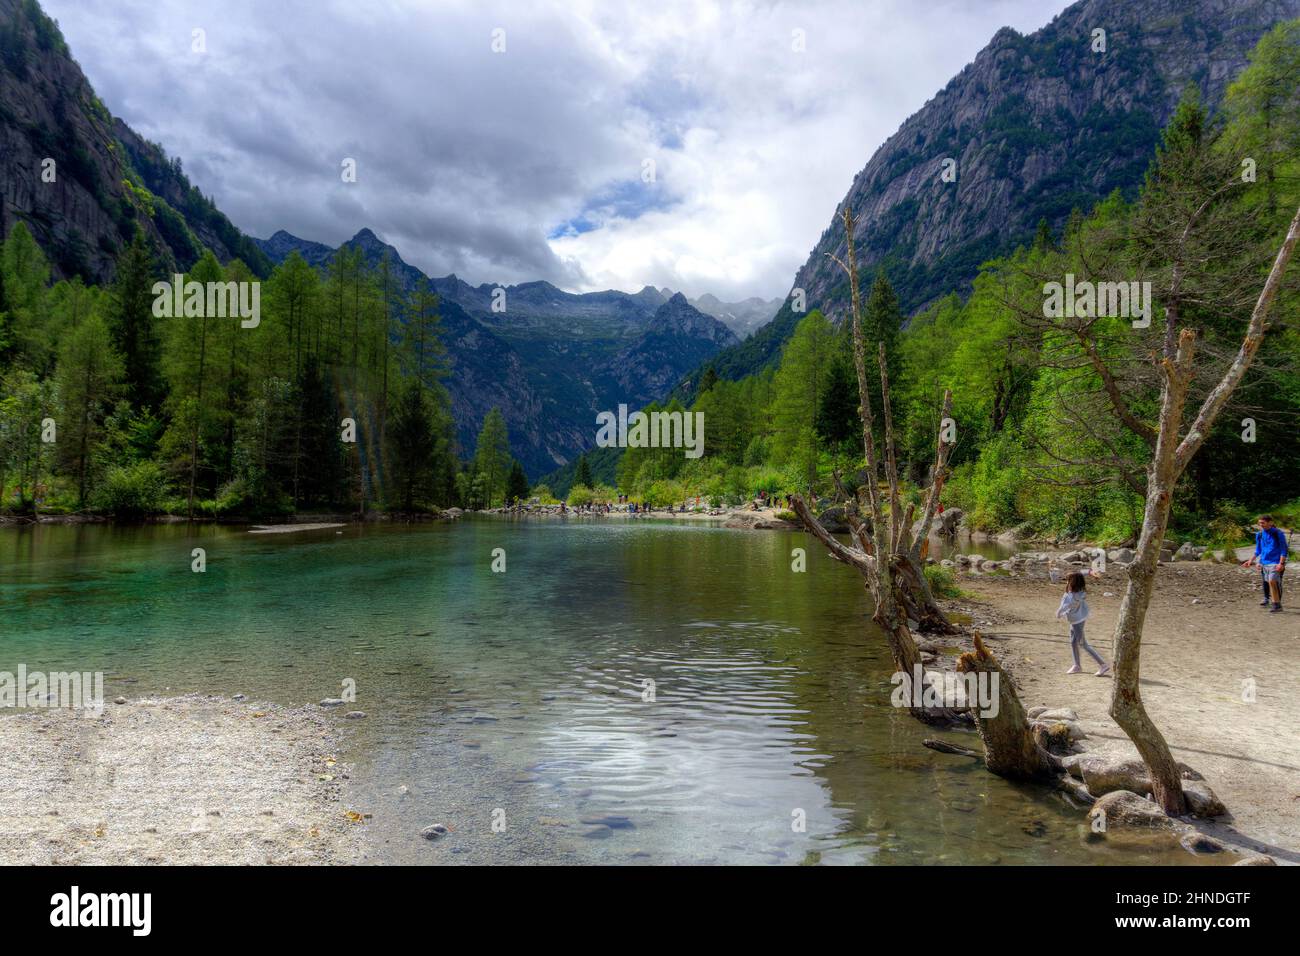 Italia, Lombardia, Valtellina, Val di Mello, lago bidet della Contessa Foto  stock - Alamy